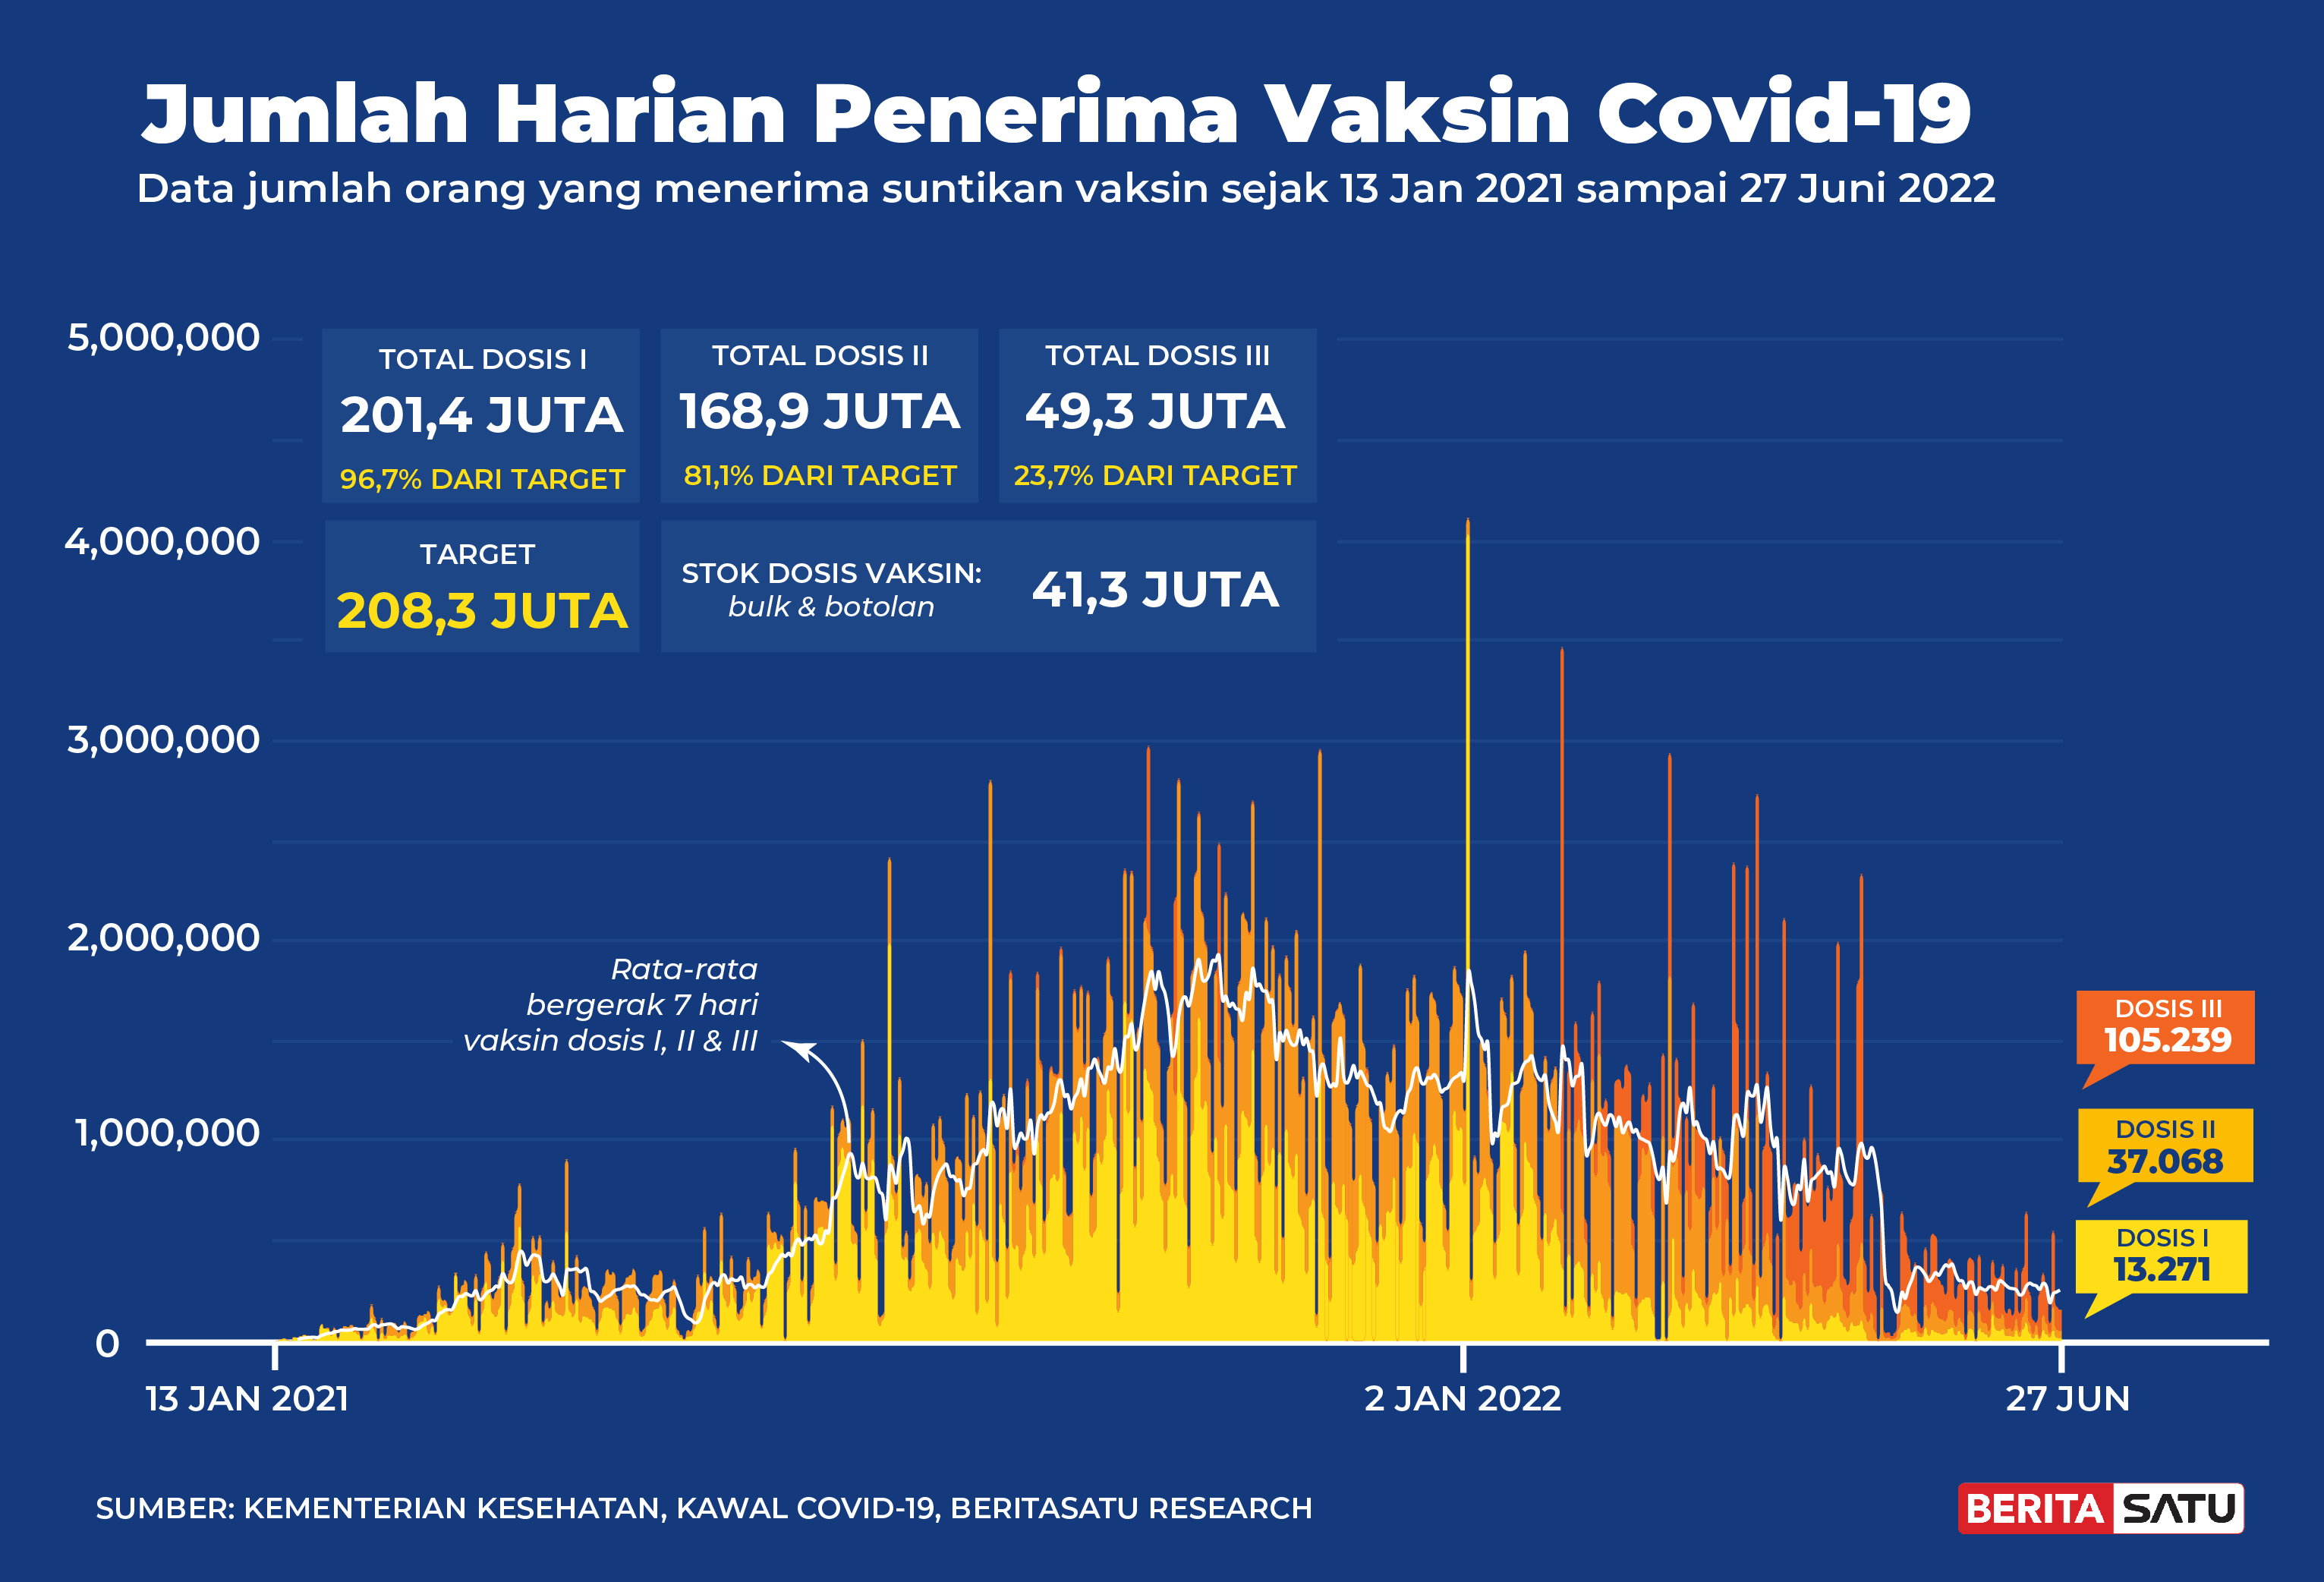 Penerima Vaksin Covid-19 di Indonesia sampai 27 Juni 2022